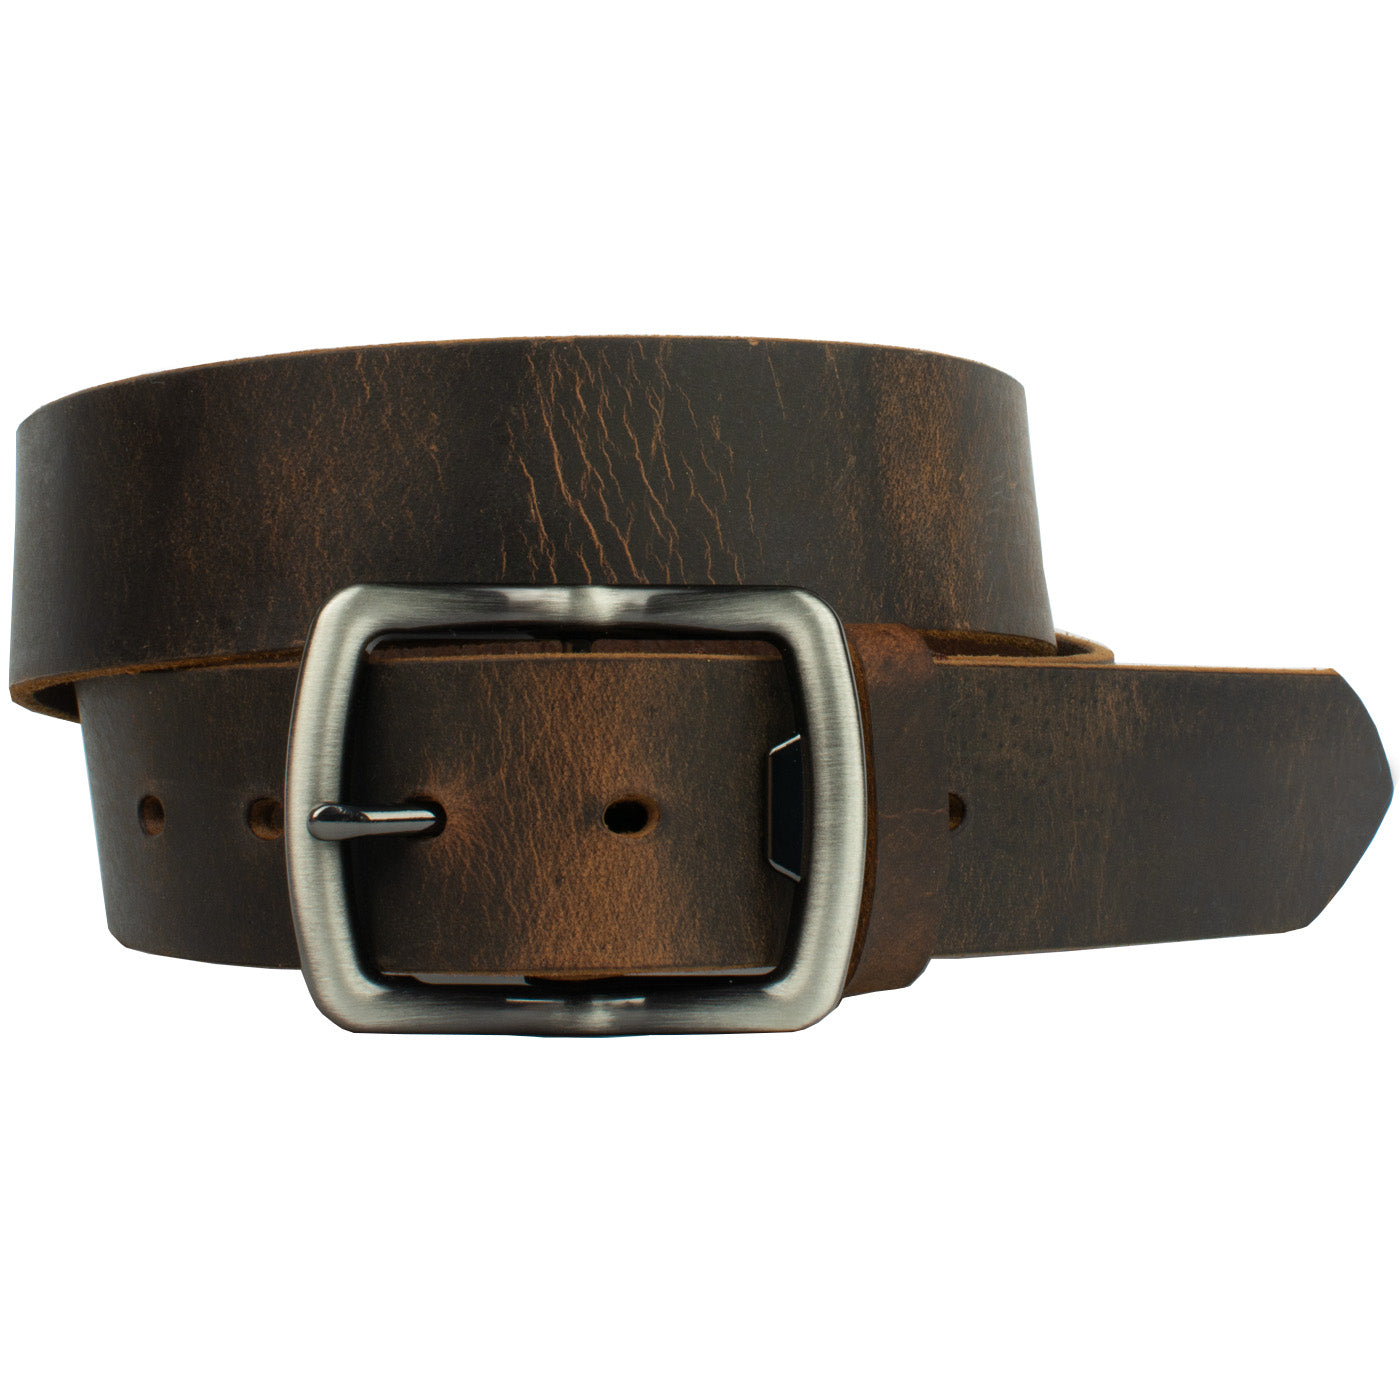 Rocky River Belt - brown belt with bottle opener buckle – NoNickel.com